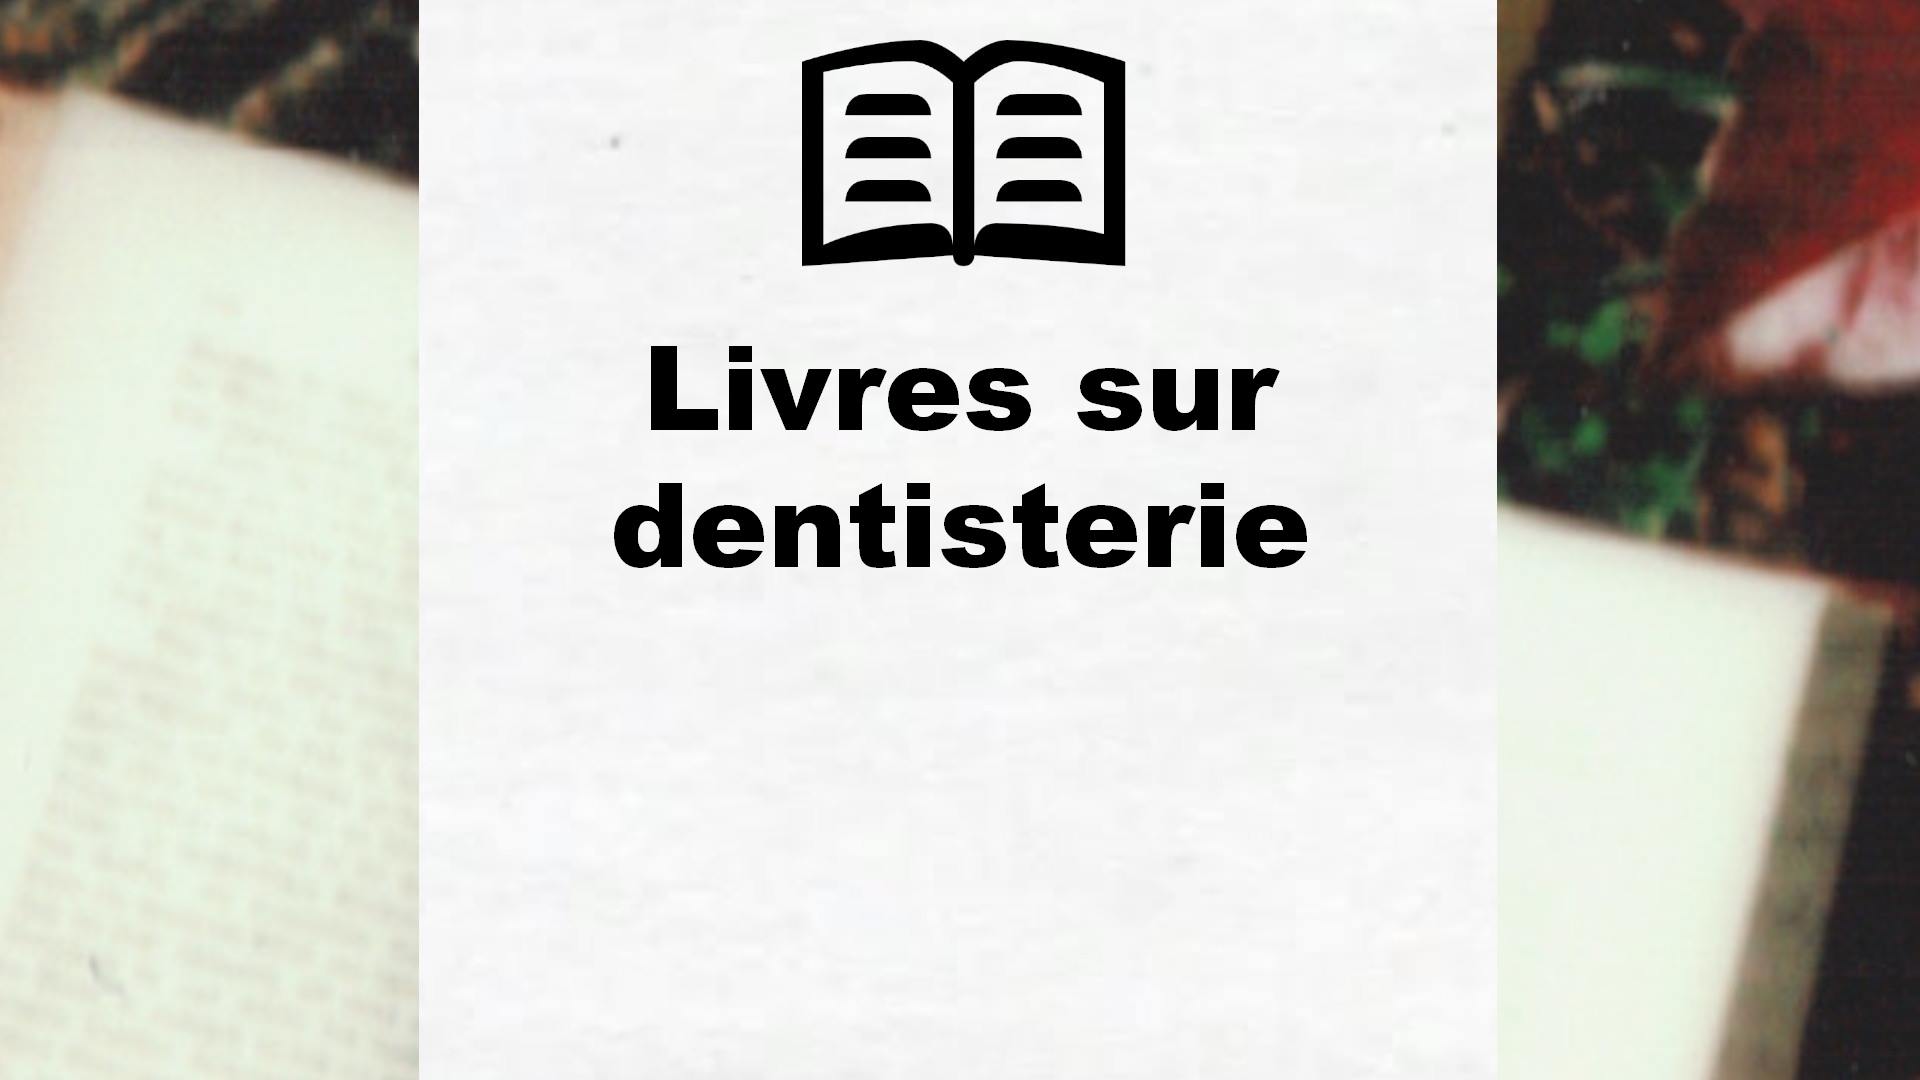 Livres sur dentisterie